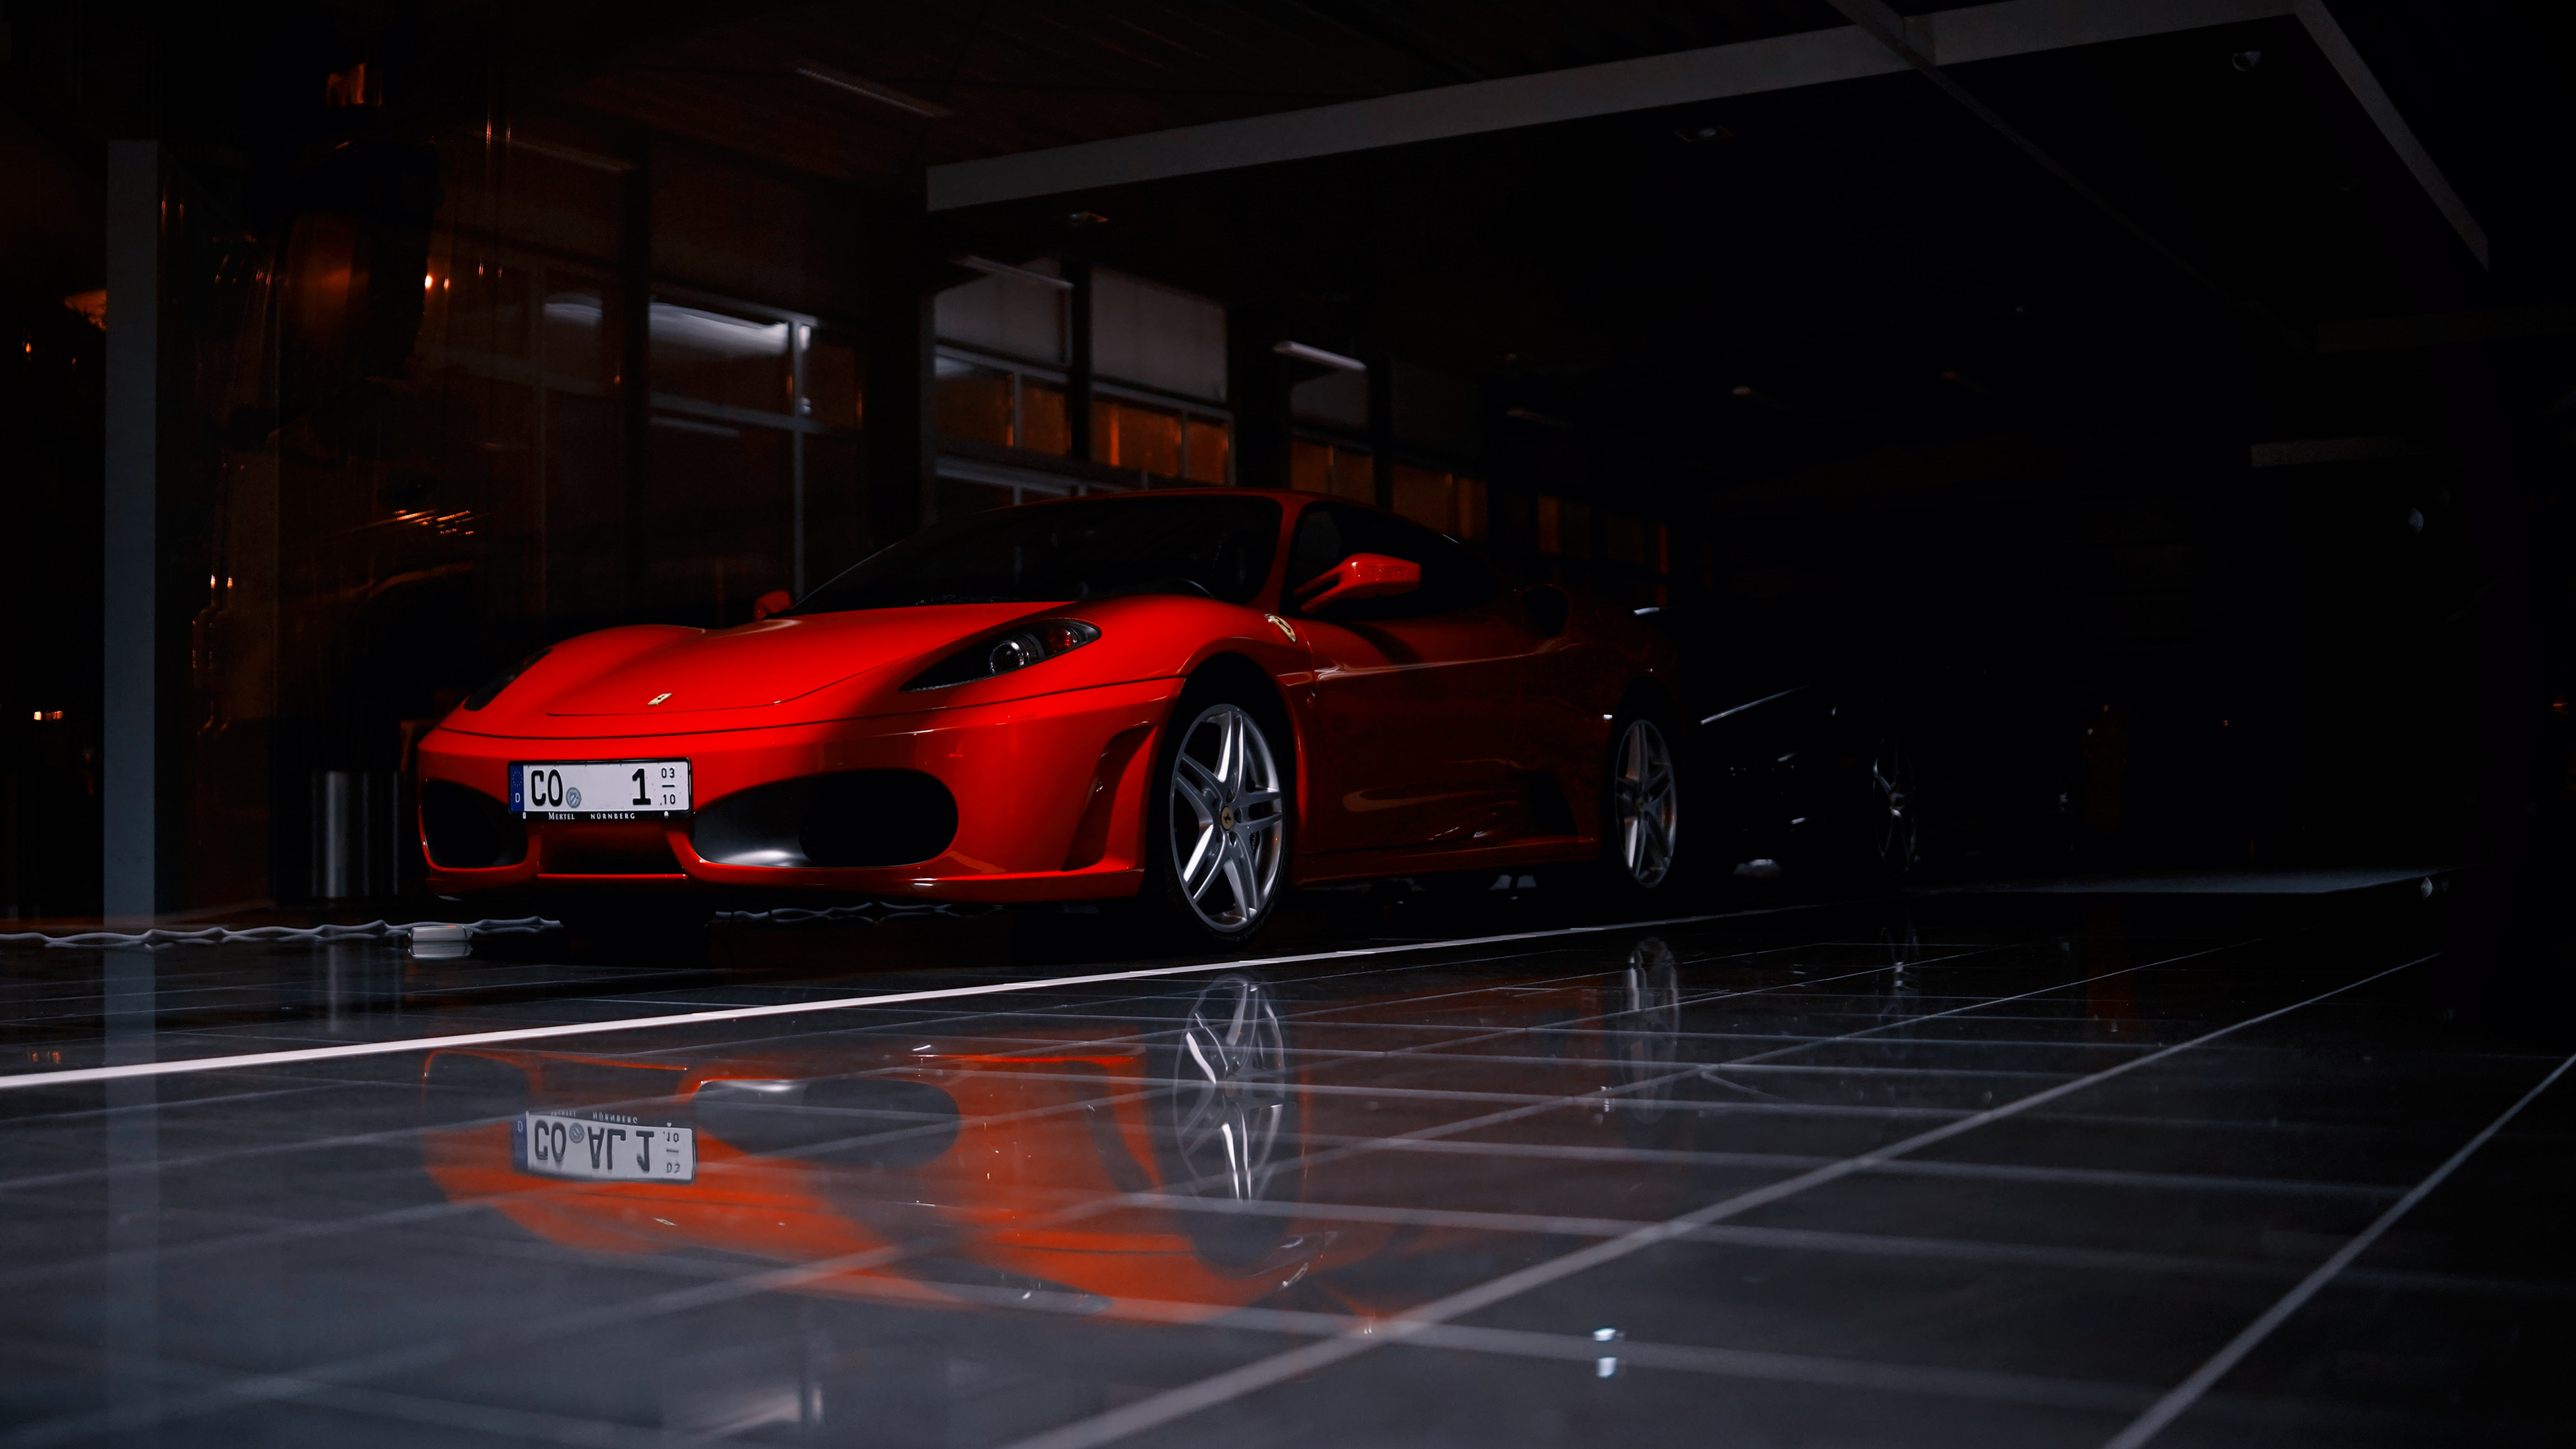 Ferrari 458 Italia Rojo Estacionado en el Estacionamiento. Wallpaper in 3840x2160 Resolution